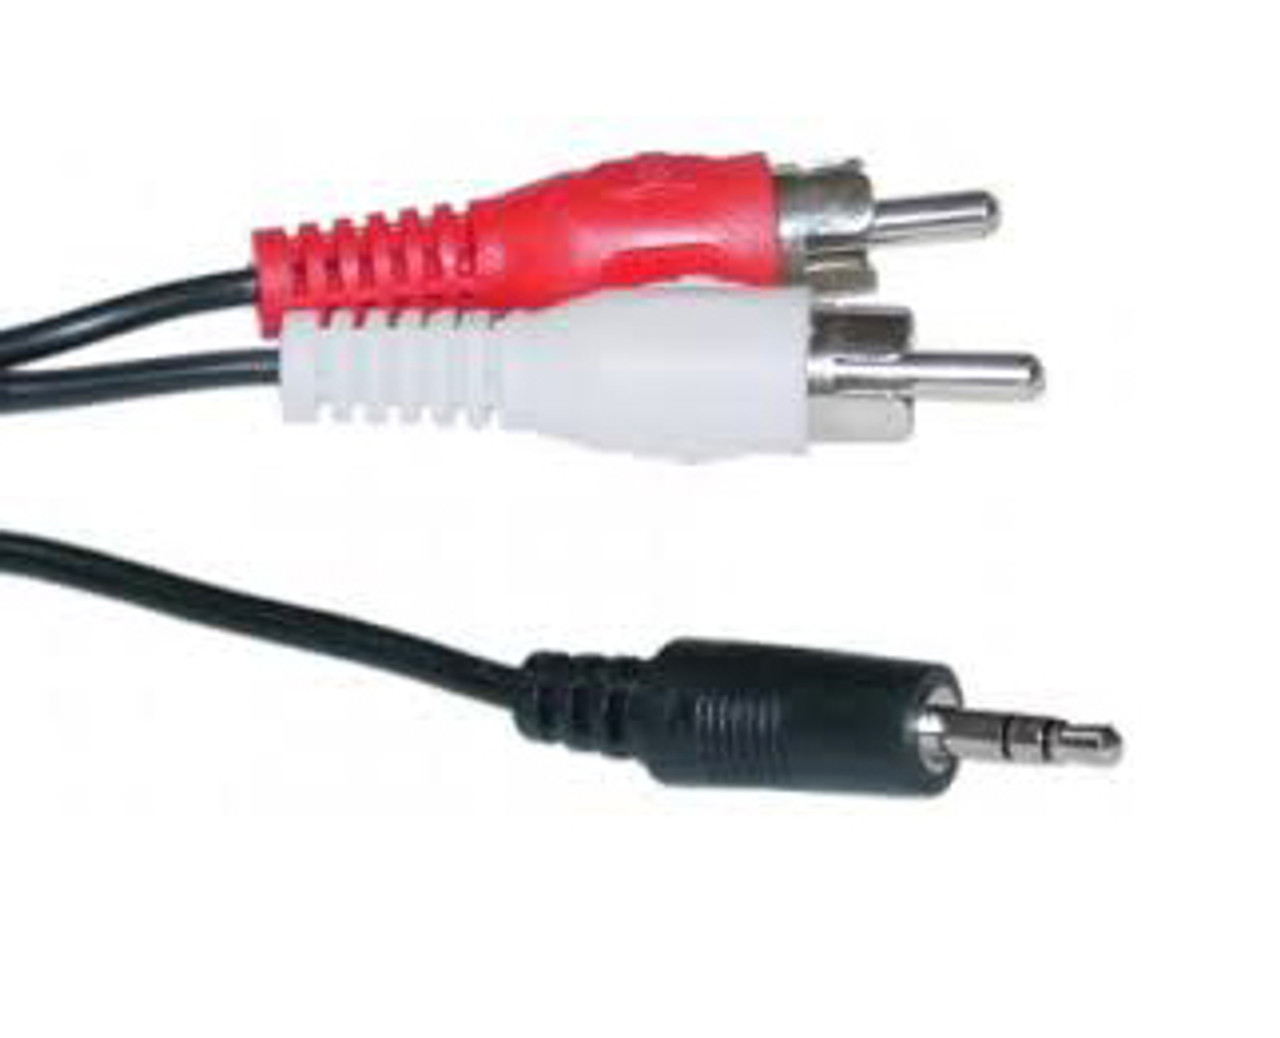 Cable Audio Mini Plug 3.5mm Stereo a 2 RCA